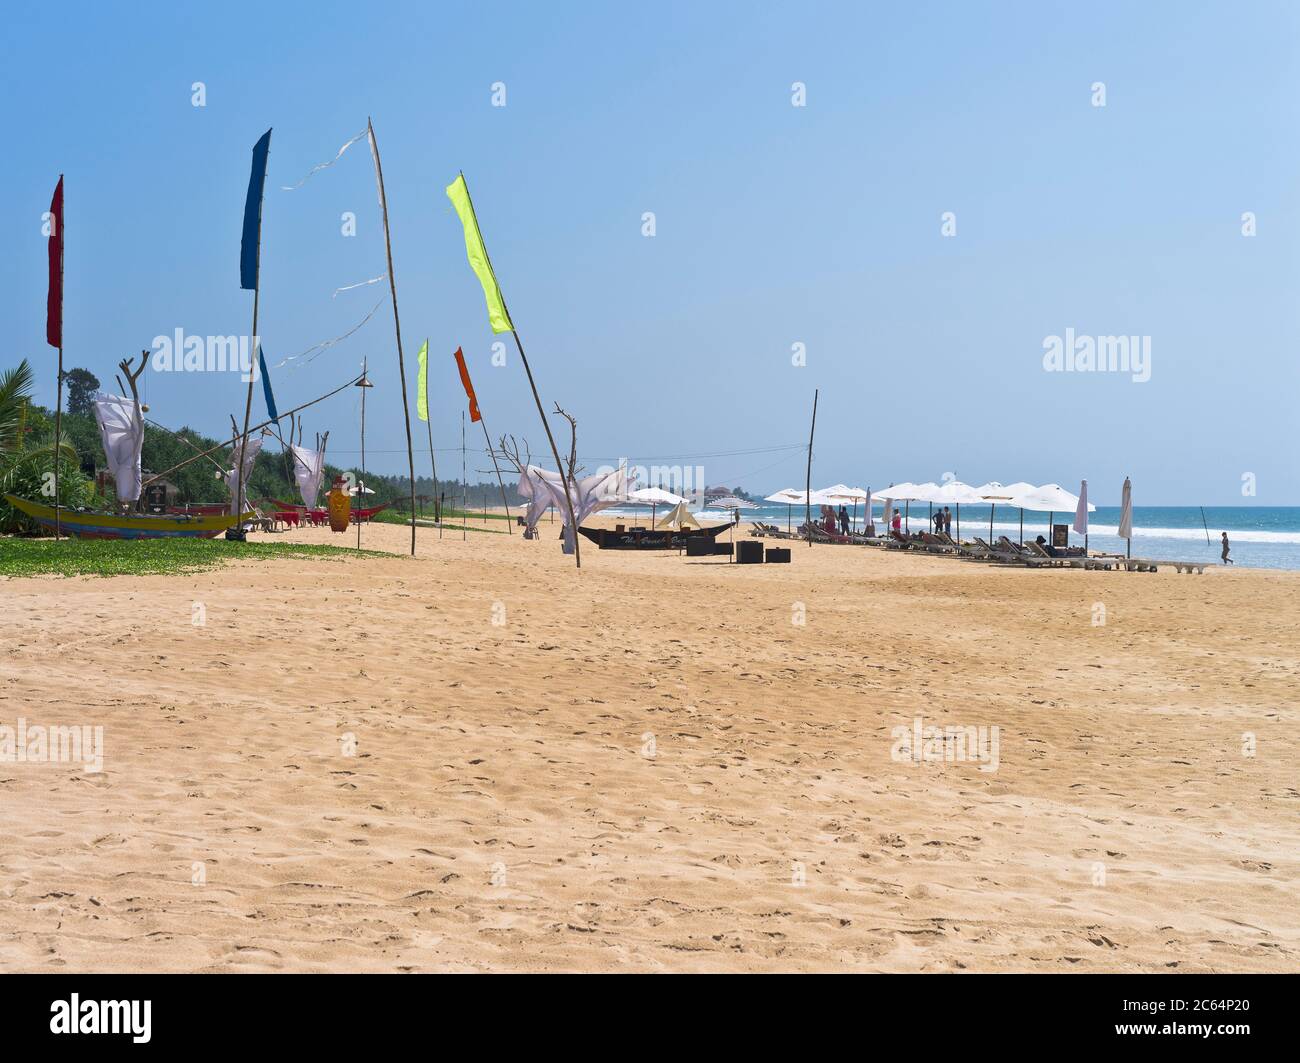 dh Robolgoda Beach Galle Road BENTOTA SRI LANKA Sri Lanka costa occidentale hotel spiagge bandiere spiaggia di sabbia Foto Stock